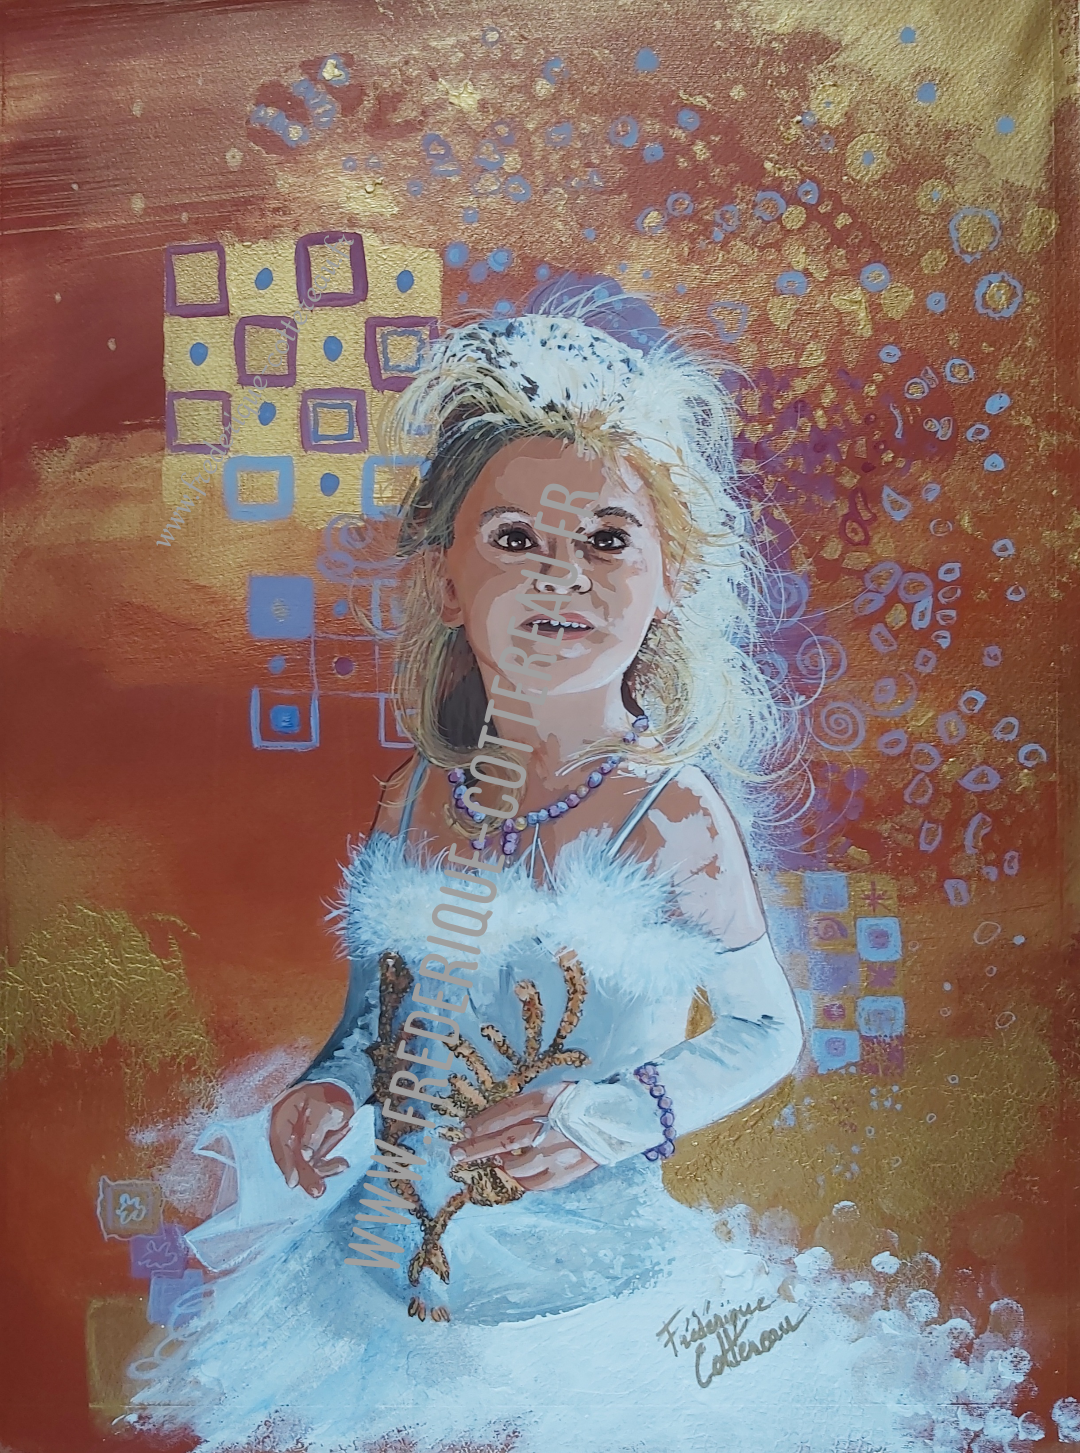 princesse;enfant,fillette,costume;blanc;francaise;or,ocrerouge,art;portrait,peinture,www.frederique-cottereau.fr;